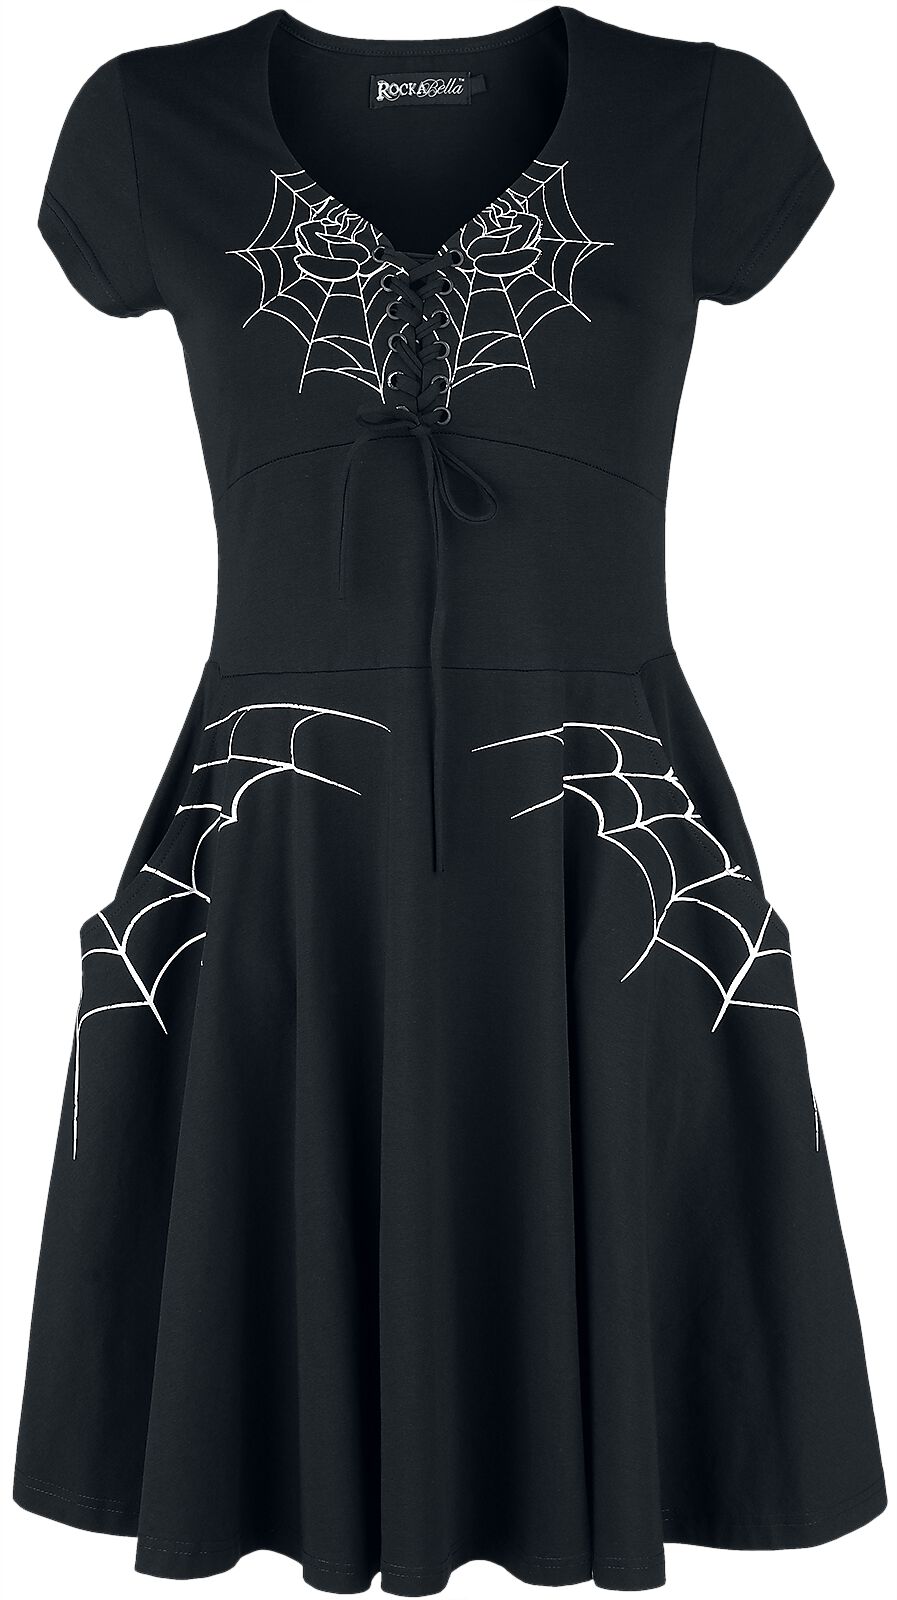 Rockabella - Gothic Kurzes Kleid - Black Widow Dress - S bis 4XL - für Damen - Größe XXL - schwarz/weiß